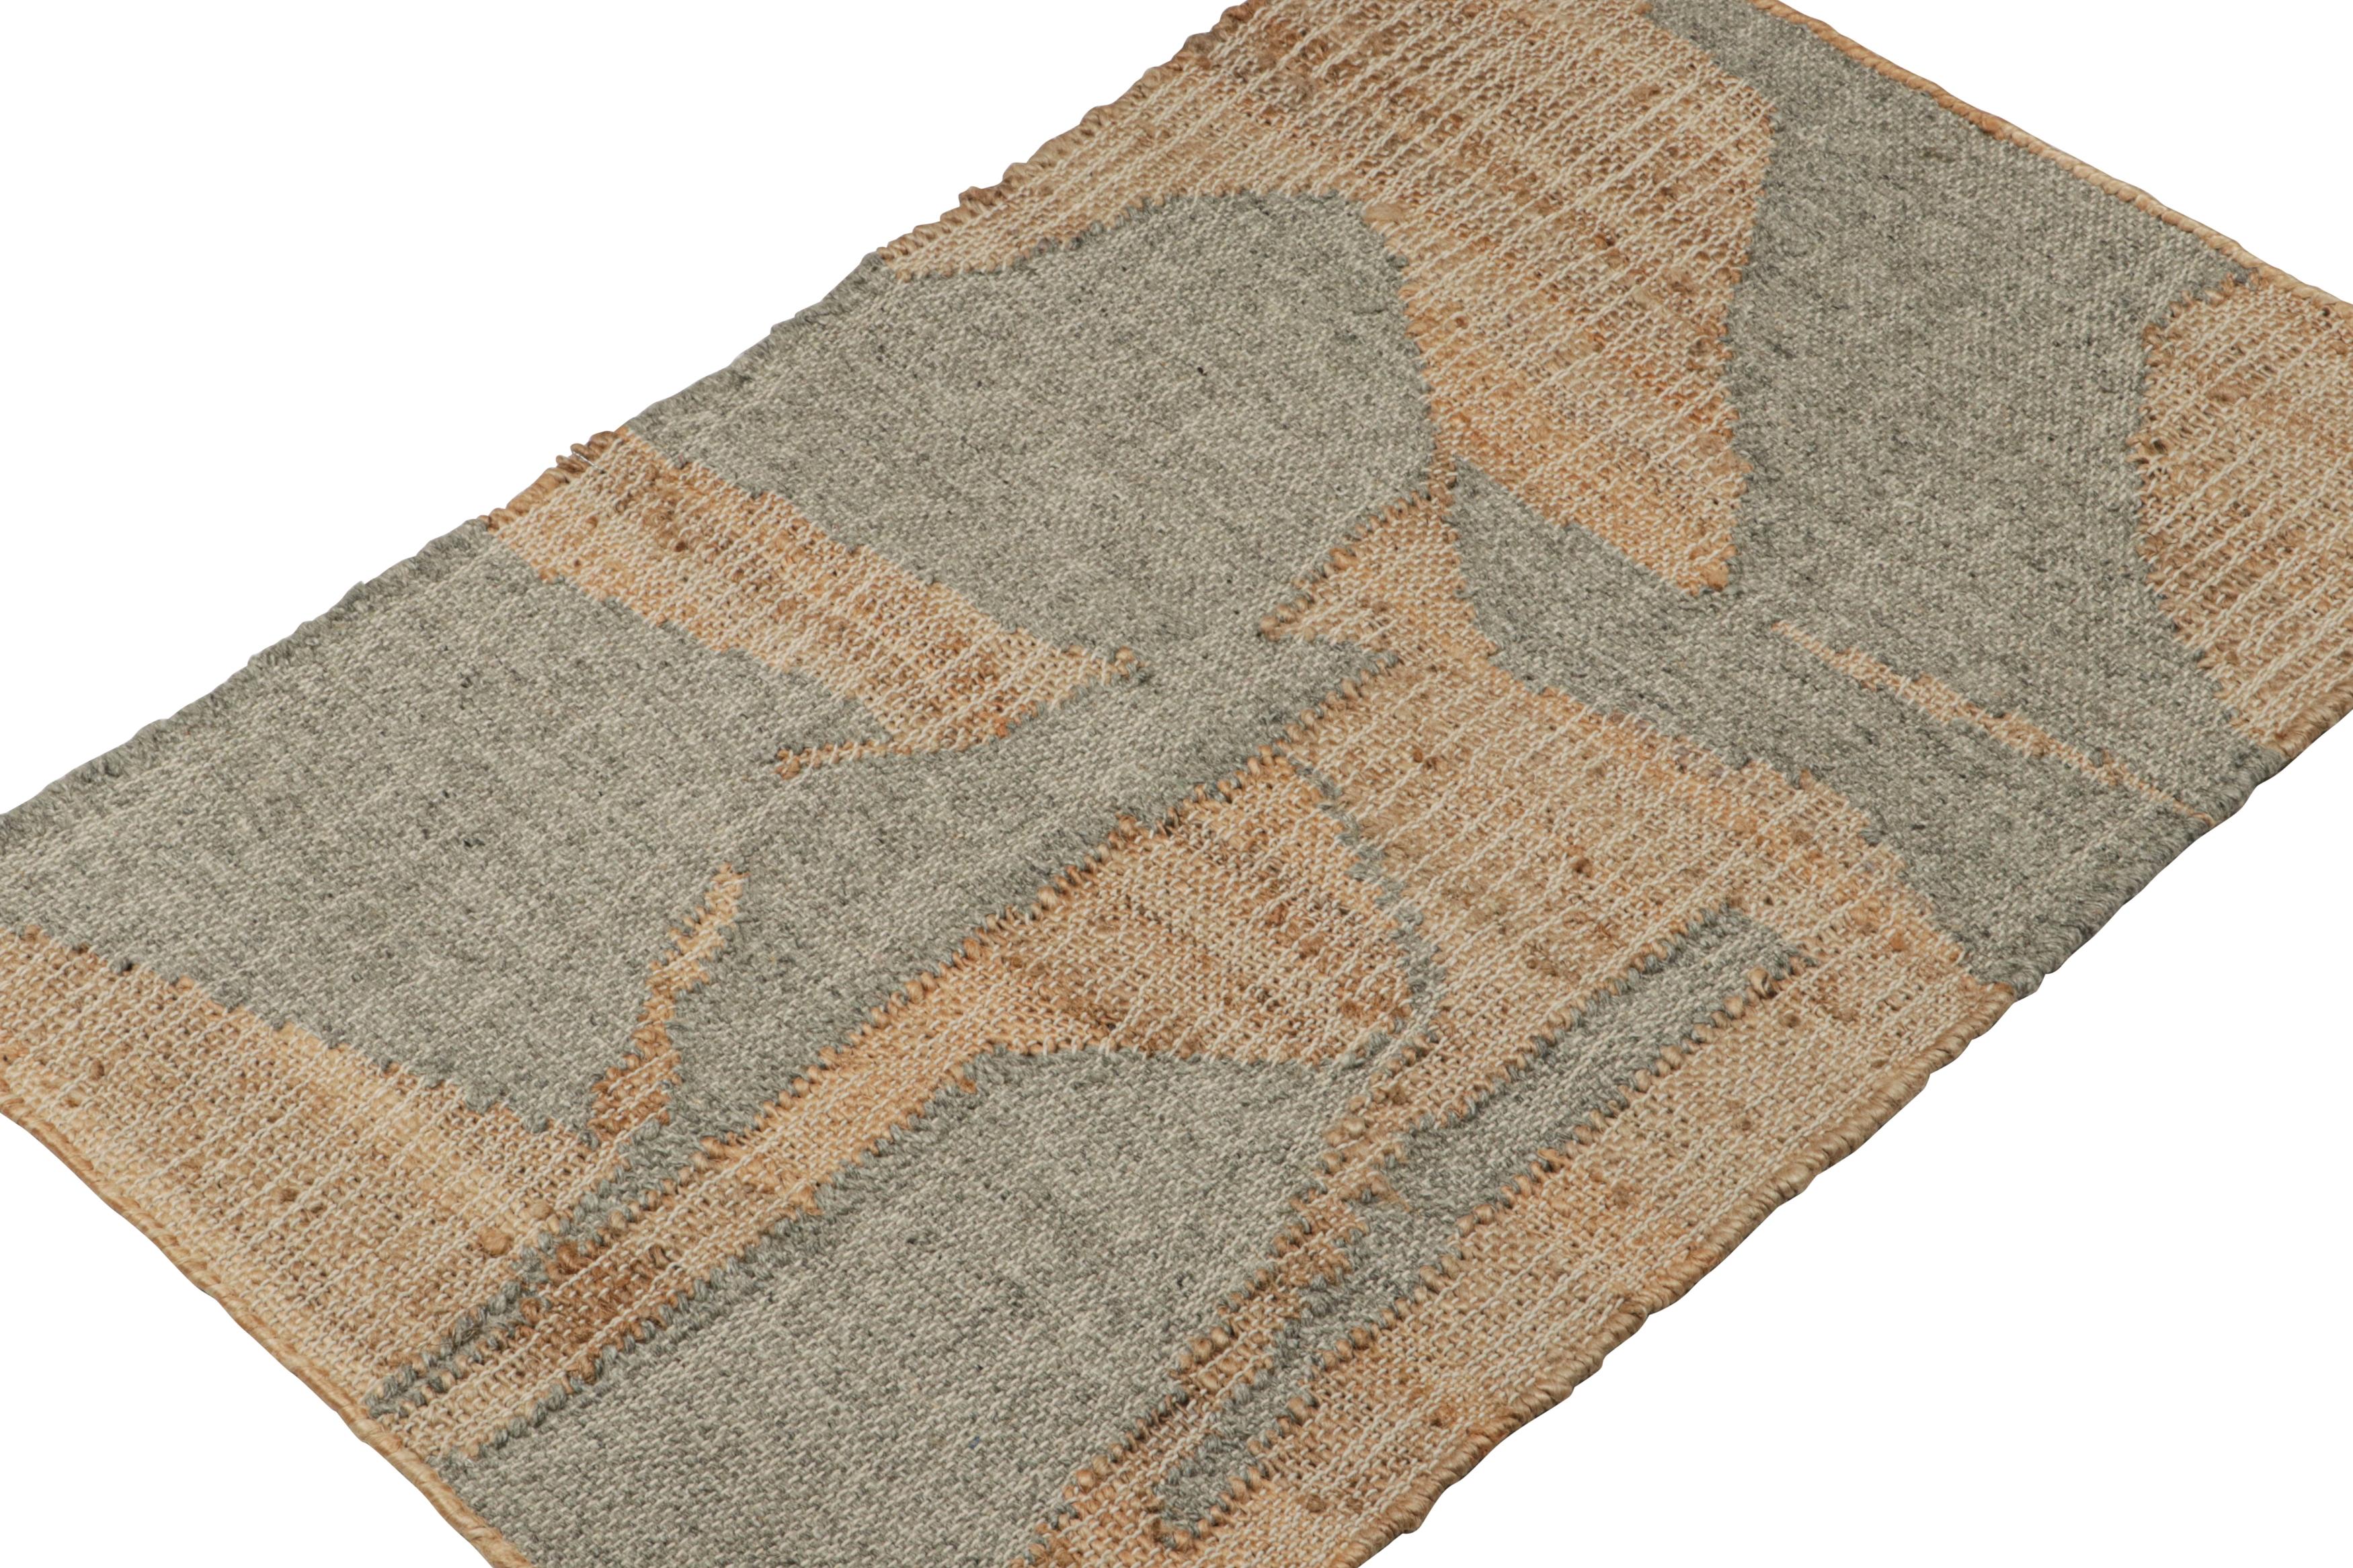 Dieser 2x3-Teppich ist eine kühne Neuheit in der Flachgewebekollektion von Rug & Kilim.
  
Über das Design: 

Dieser moderne Kelim aus Jute, Wolle und Baumwolle ist handgewebt und trägt geometrische Muster in Braun und Grau. Darüber hinaus genießen